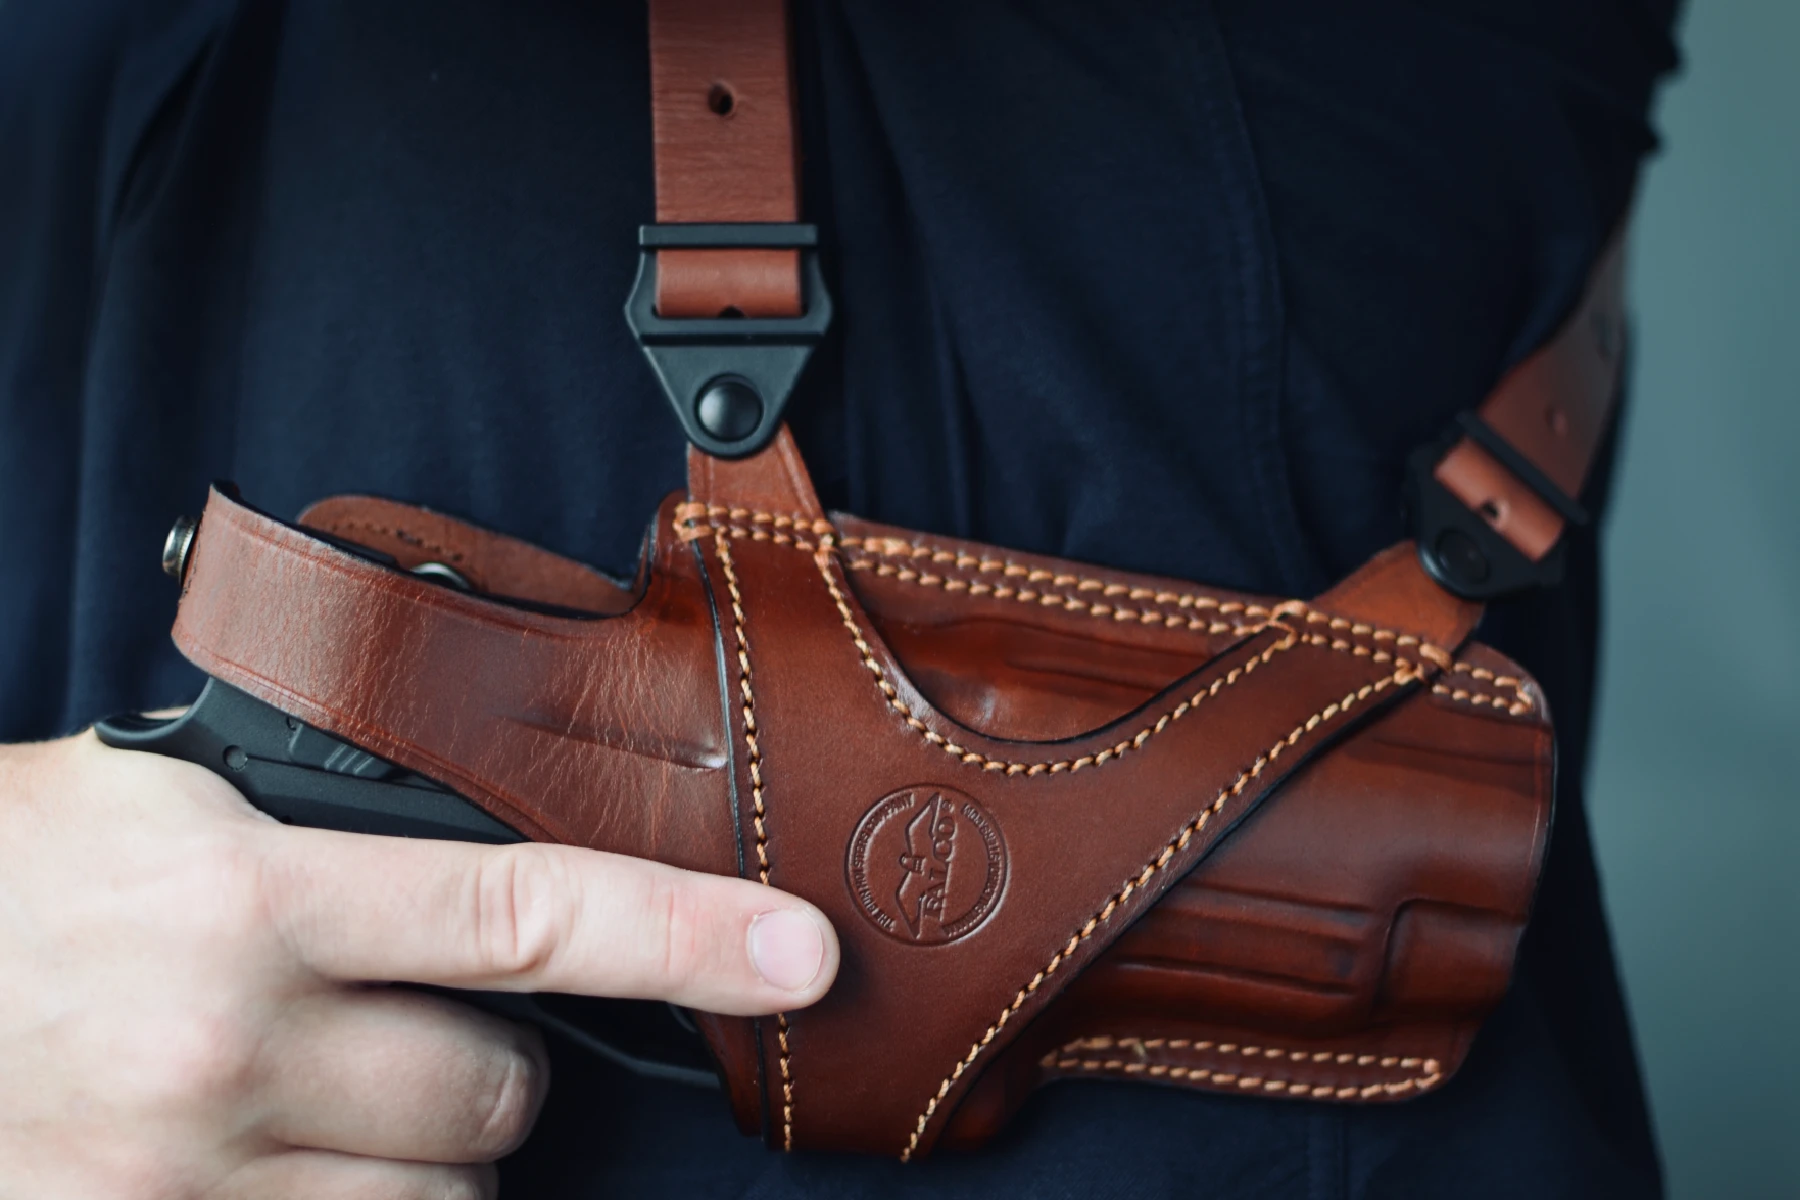 Suit holster for full-size handgun